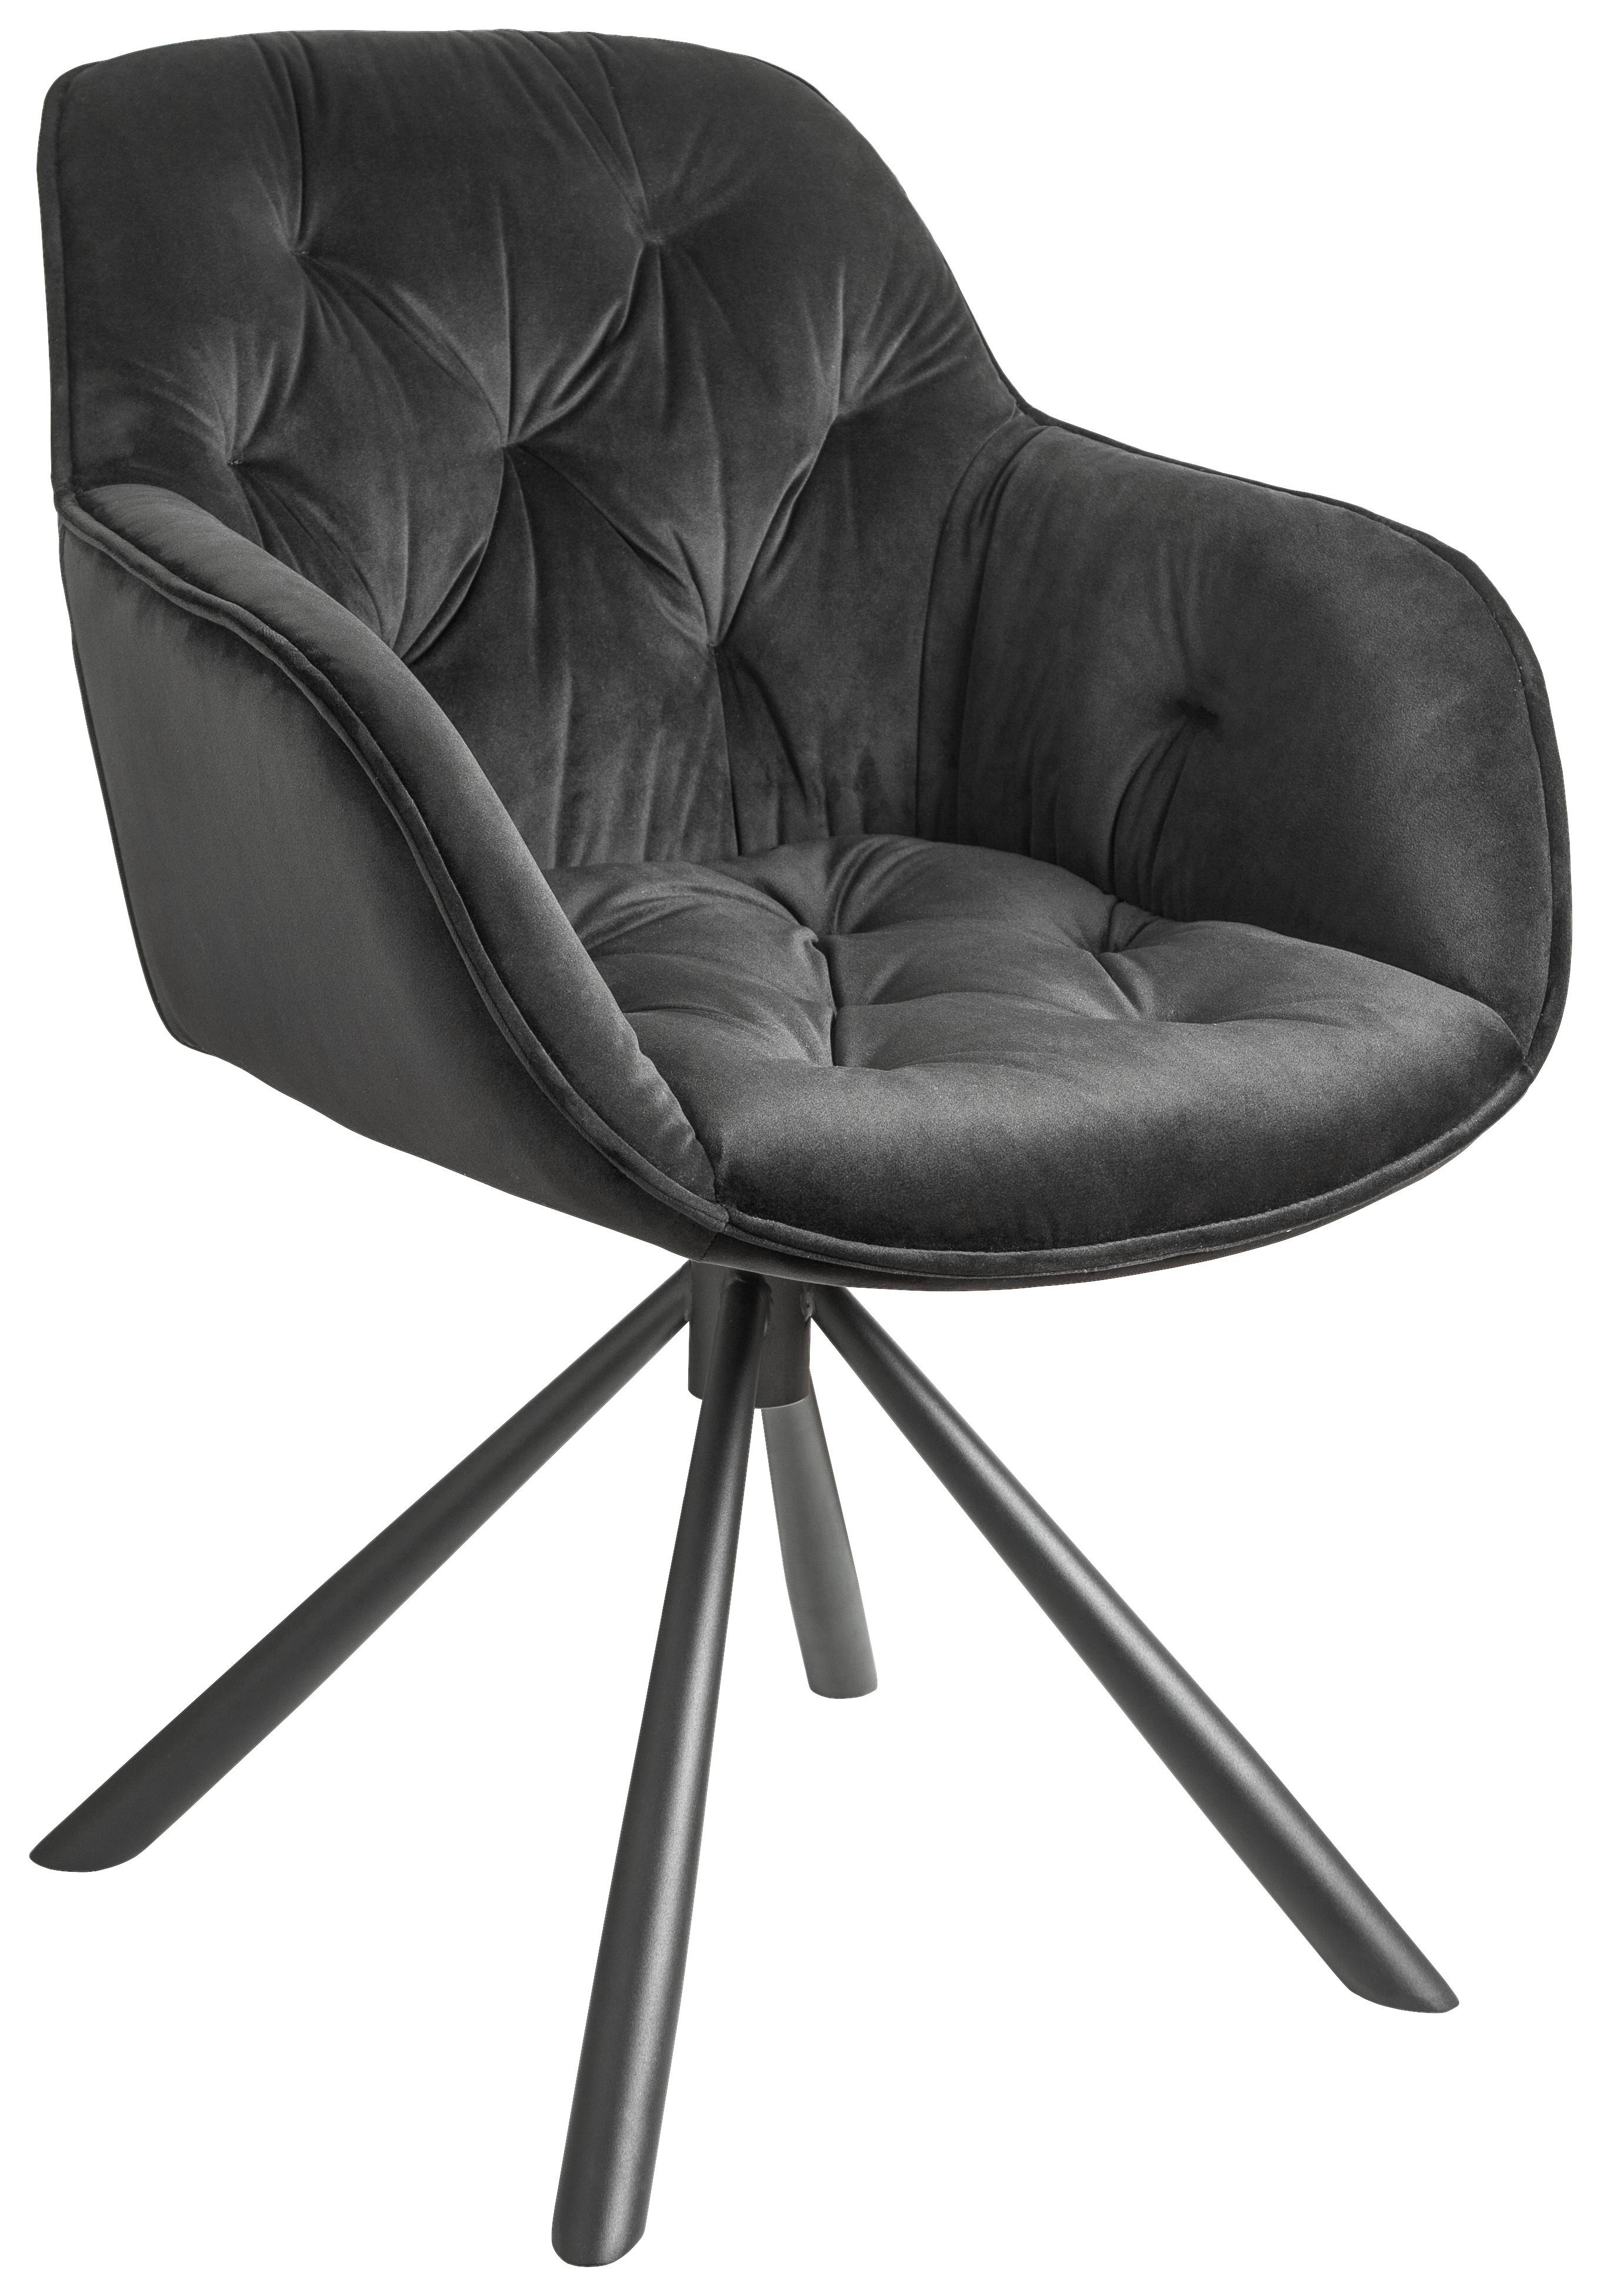 Židle Eileen Černá - černá, Lifestyle, kov/textil (63/86/66cm) - Premium Living